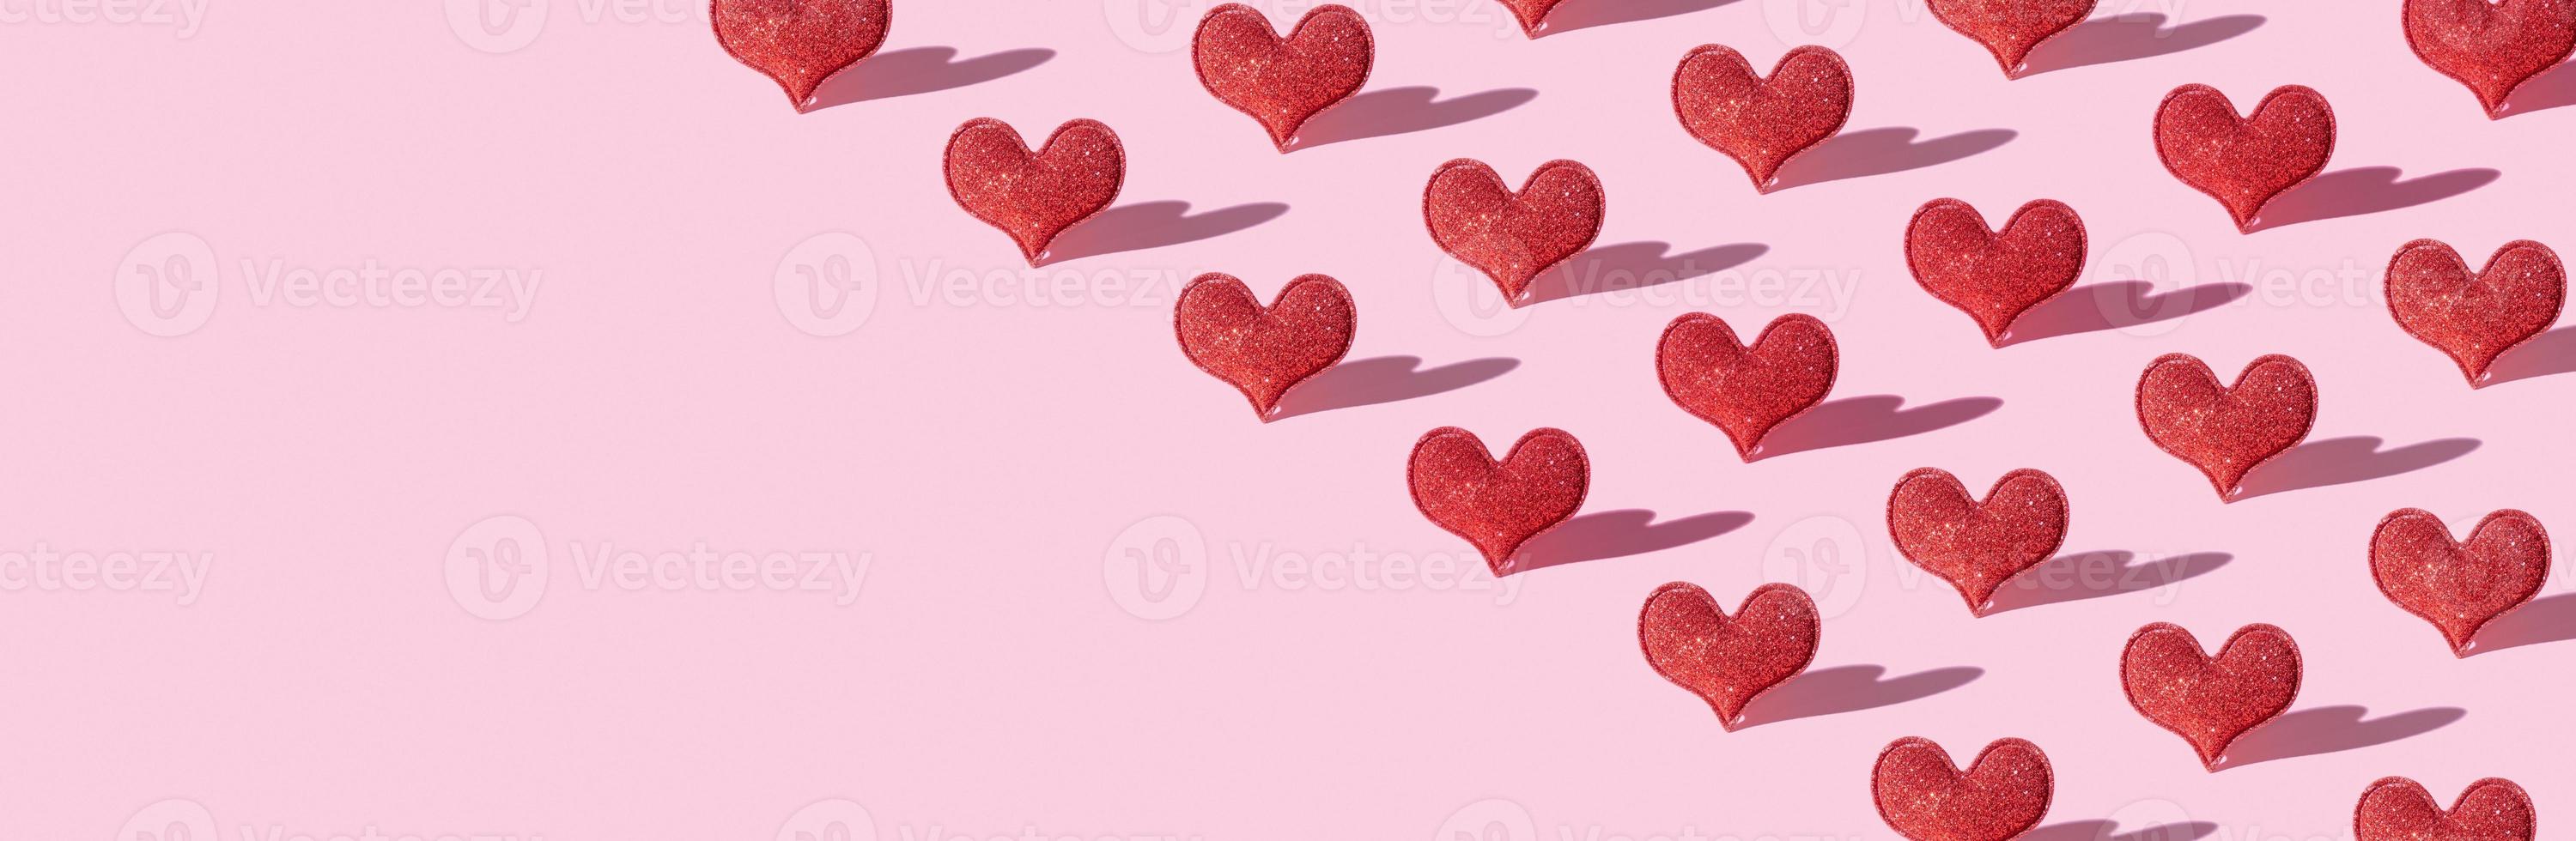 sem emenda com forma de coração glitter vermelho sobre fundo rosa com sombra dura. amor de símbolo minimalista do dia dos namorados. bandeira foto